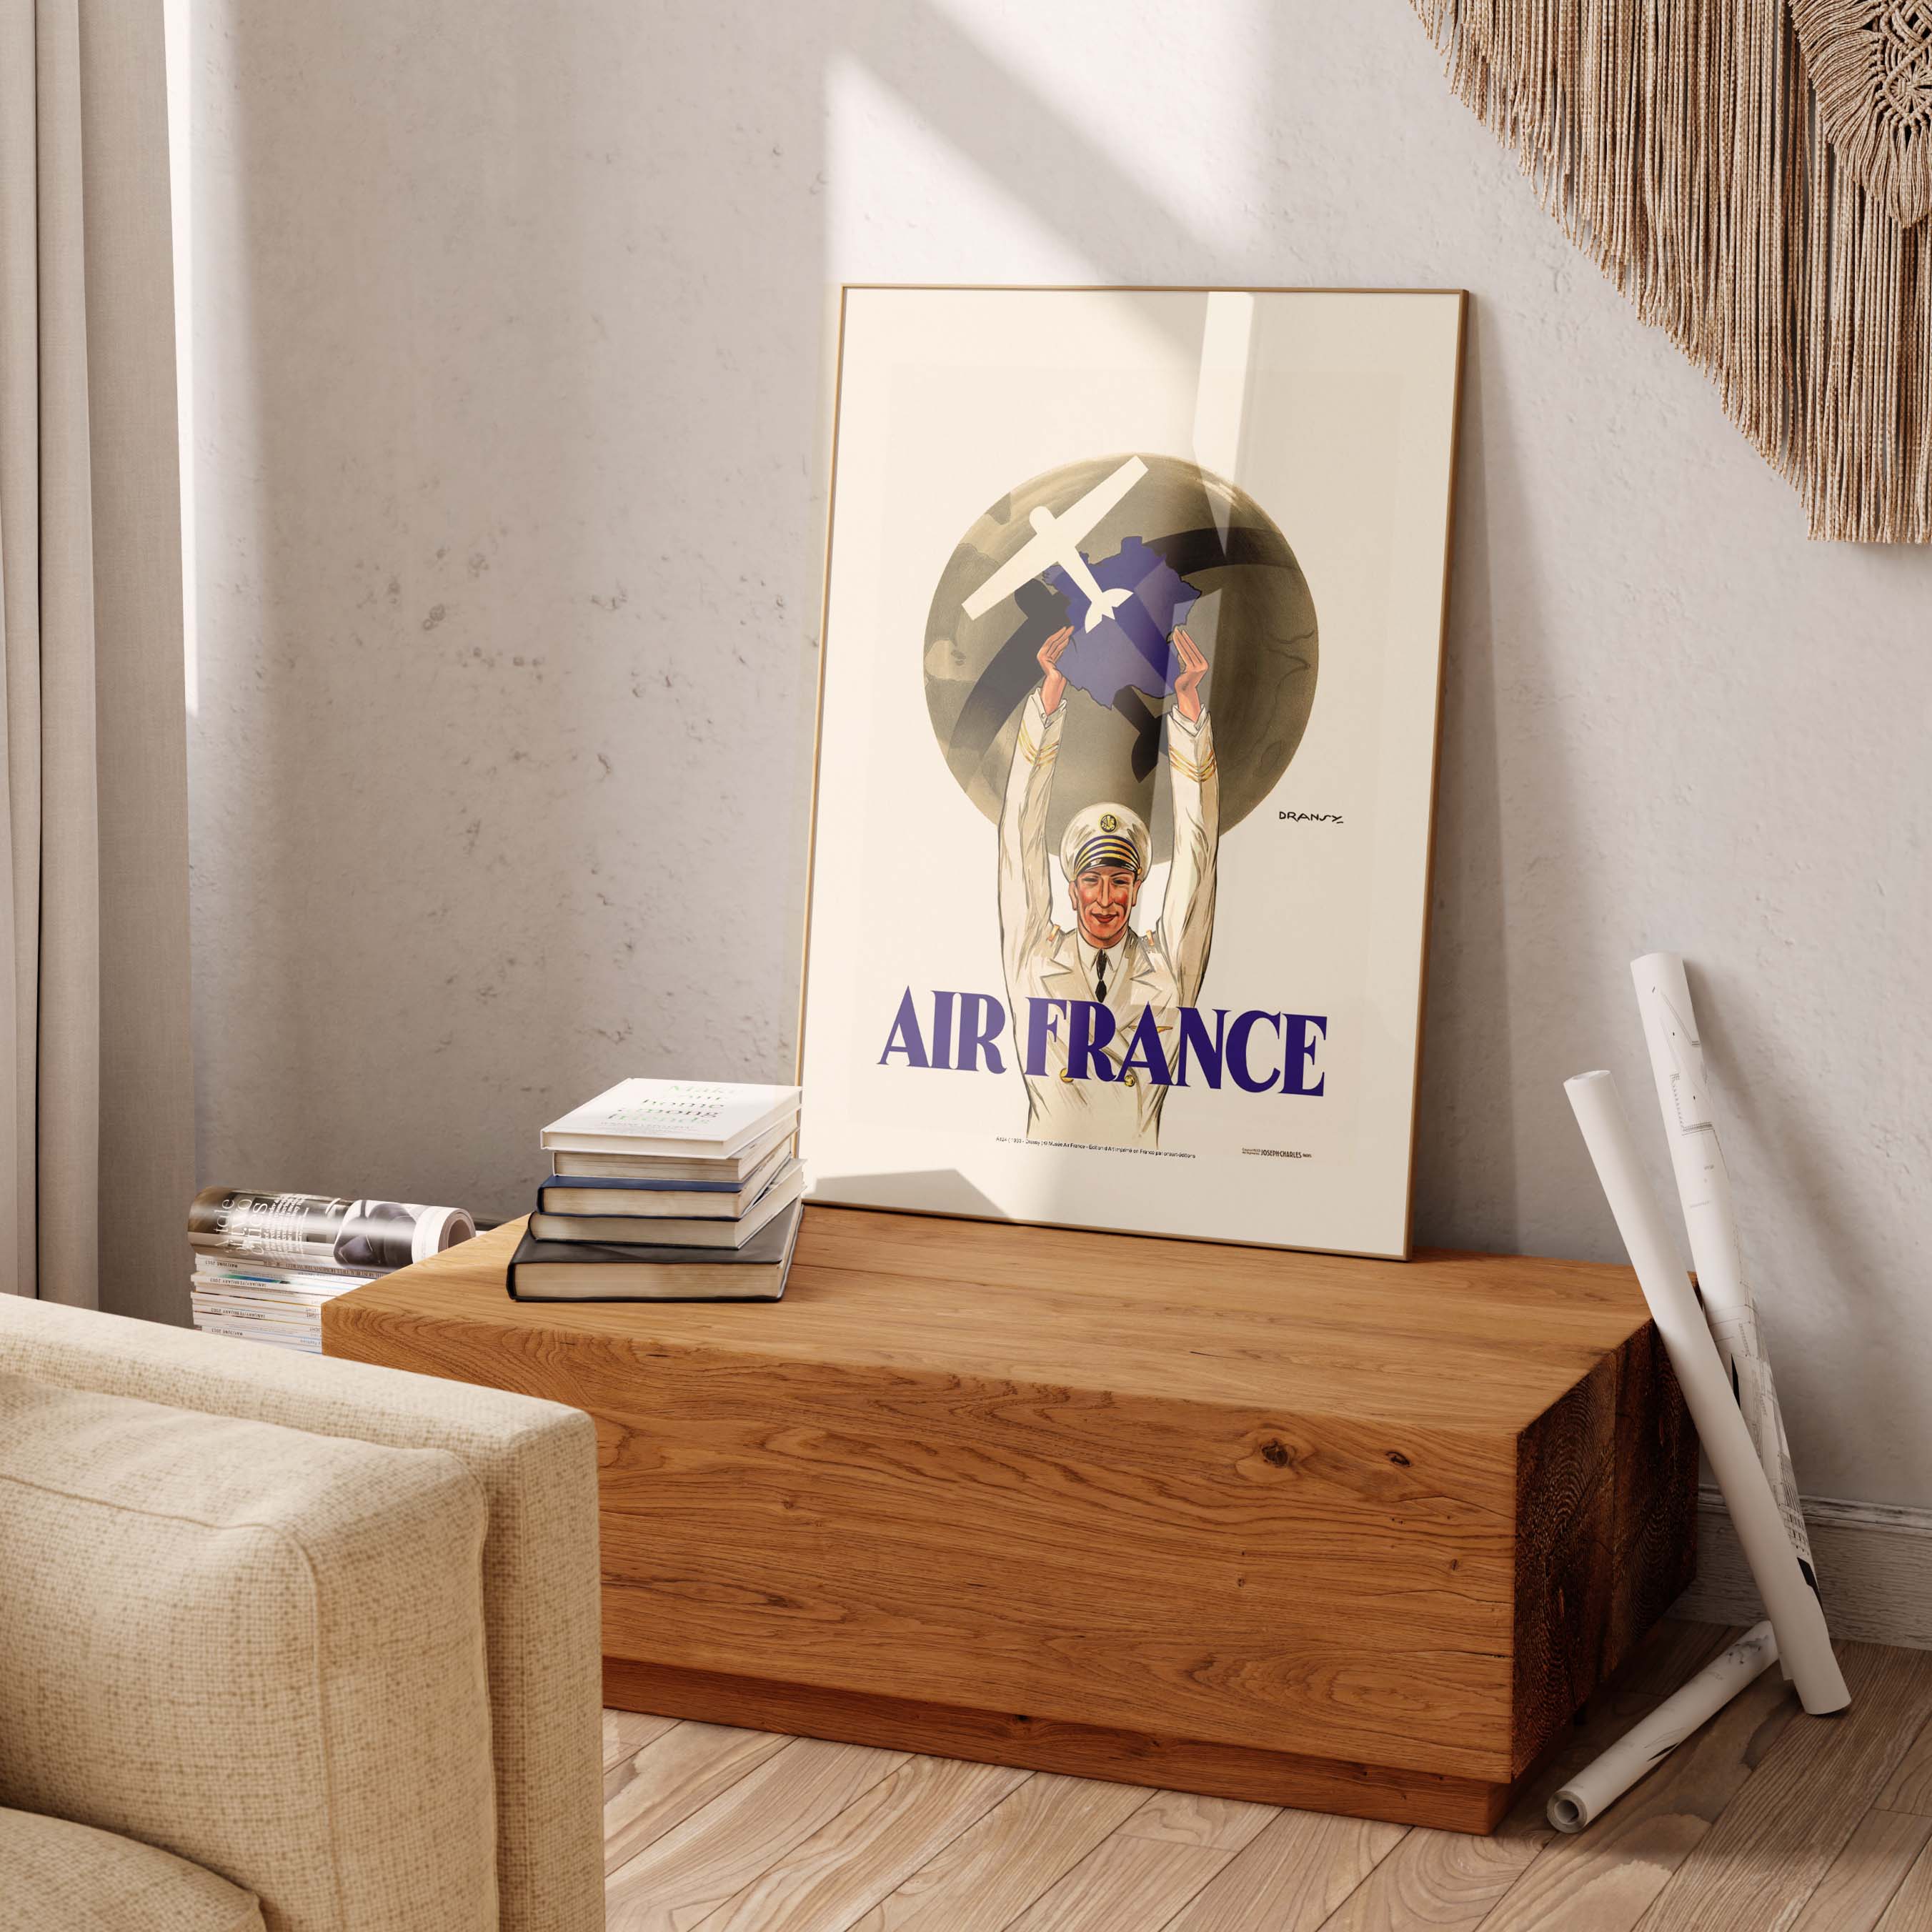 Affiche Air France - Première Affiche de la compagnie-oneart.fr